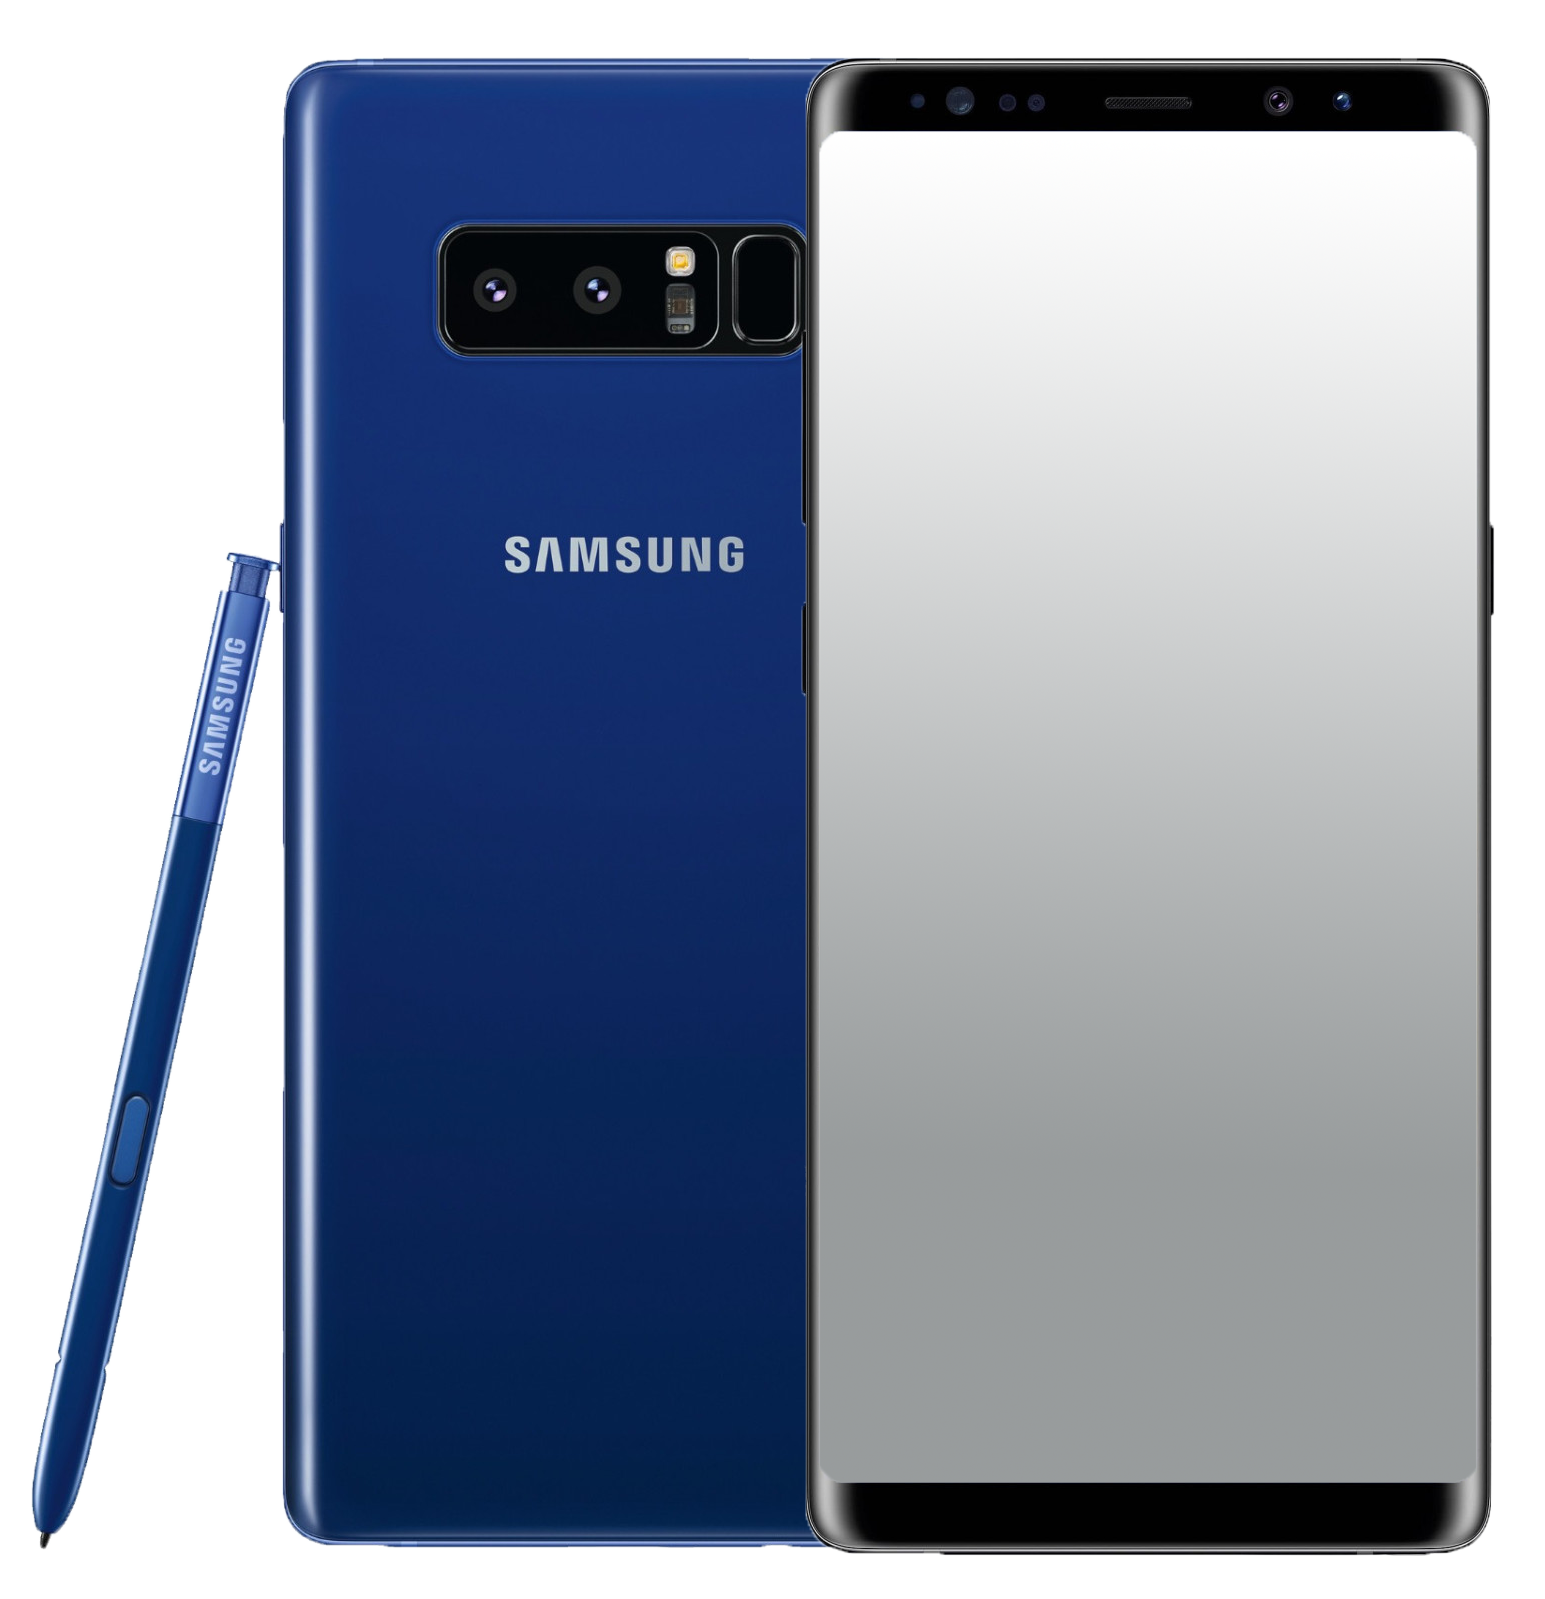 Samsung Galaxy Note 8 Dual Sim blau - Ohne Vertrag